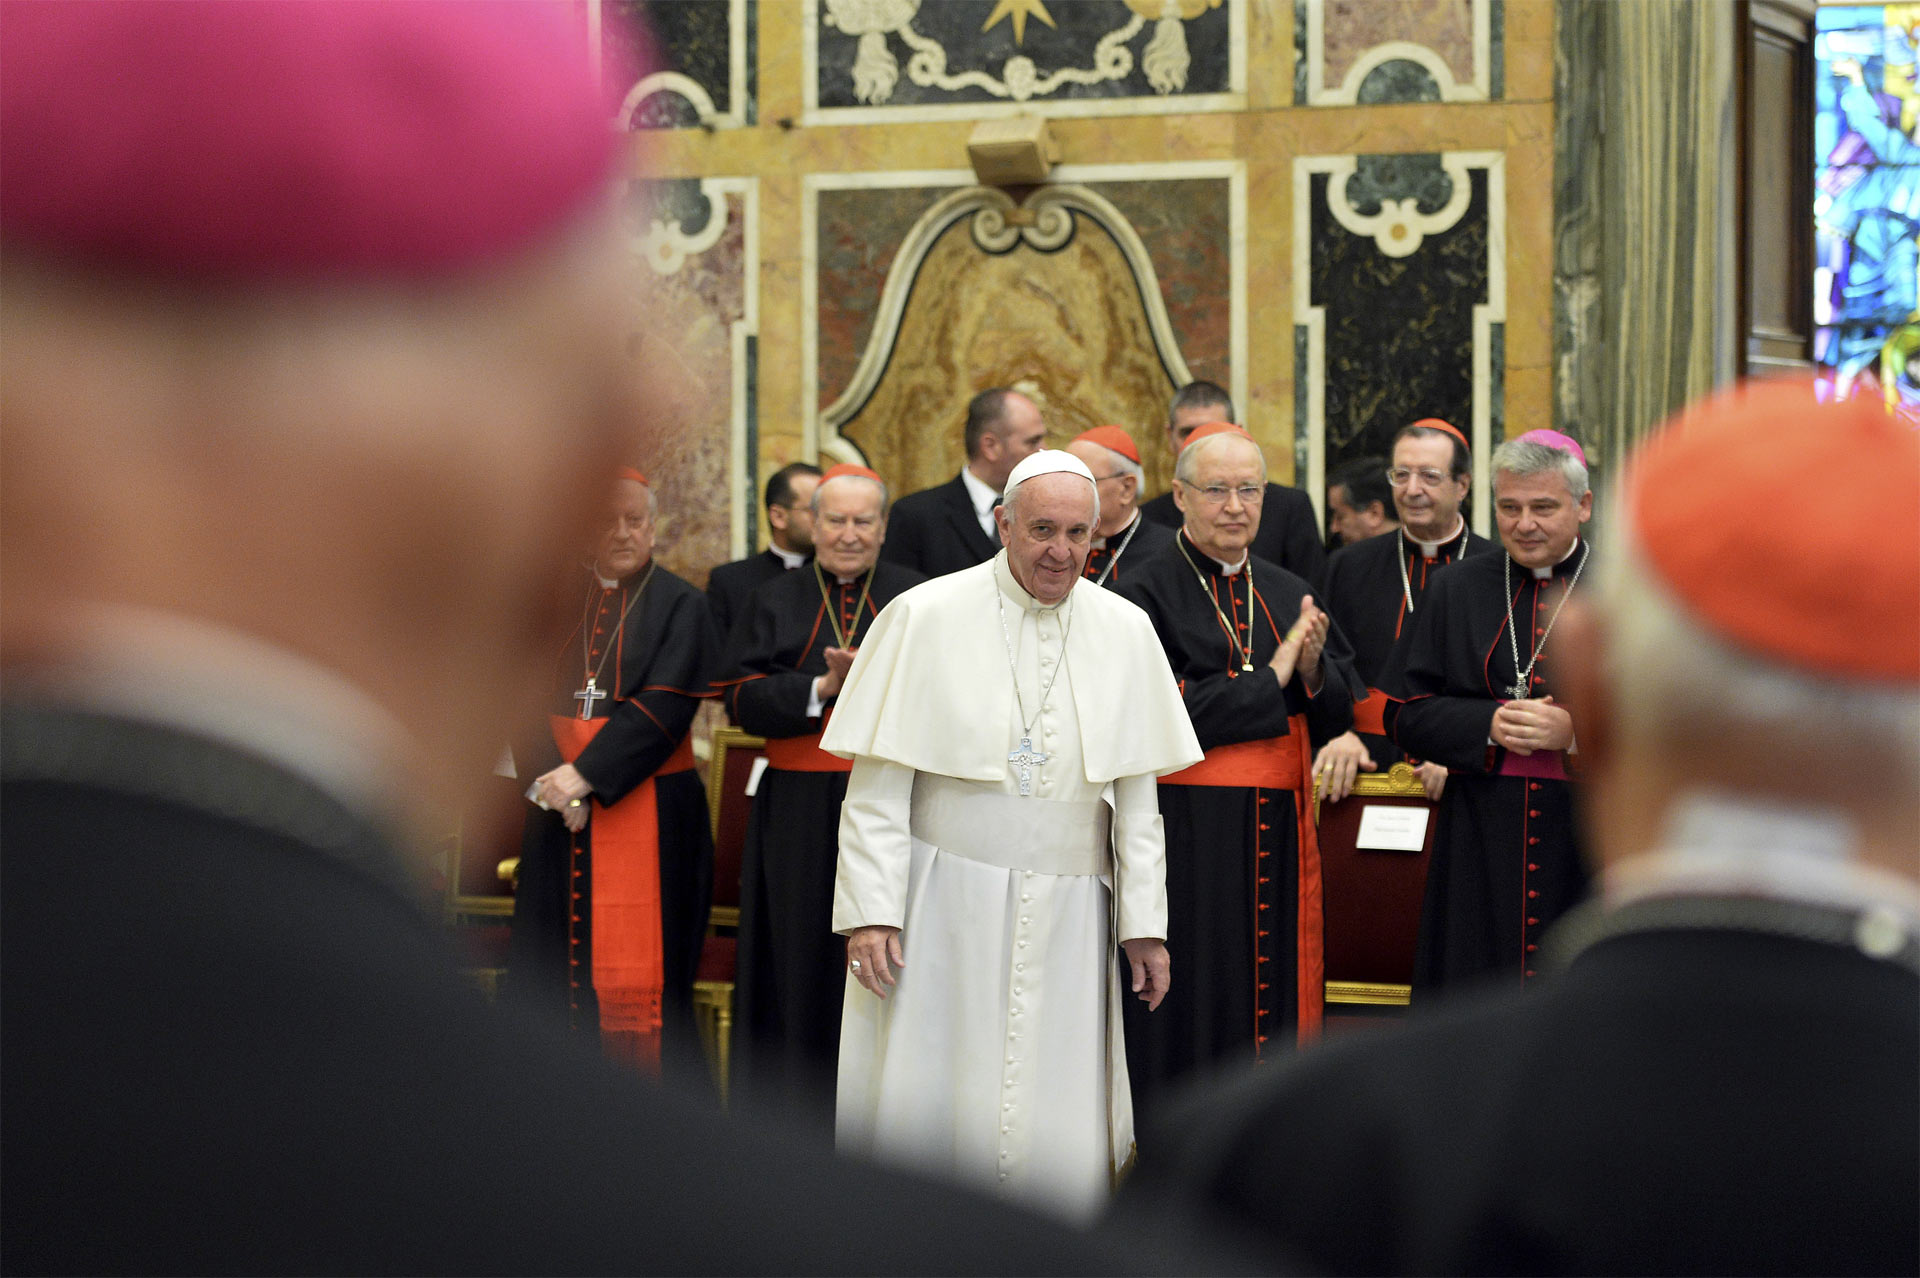 El Sumo Pontífice dijo que seguirá luchando por recuperar la integridad de la institución con "claridad y firme determinación"